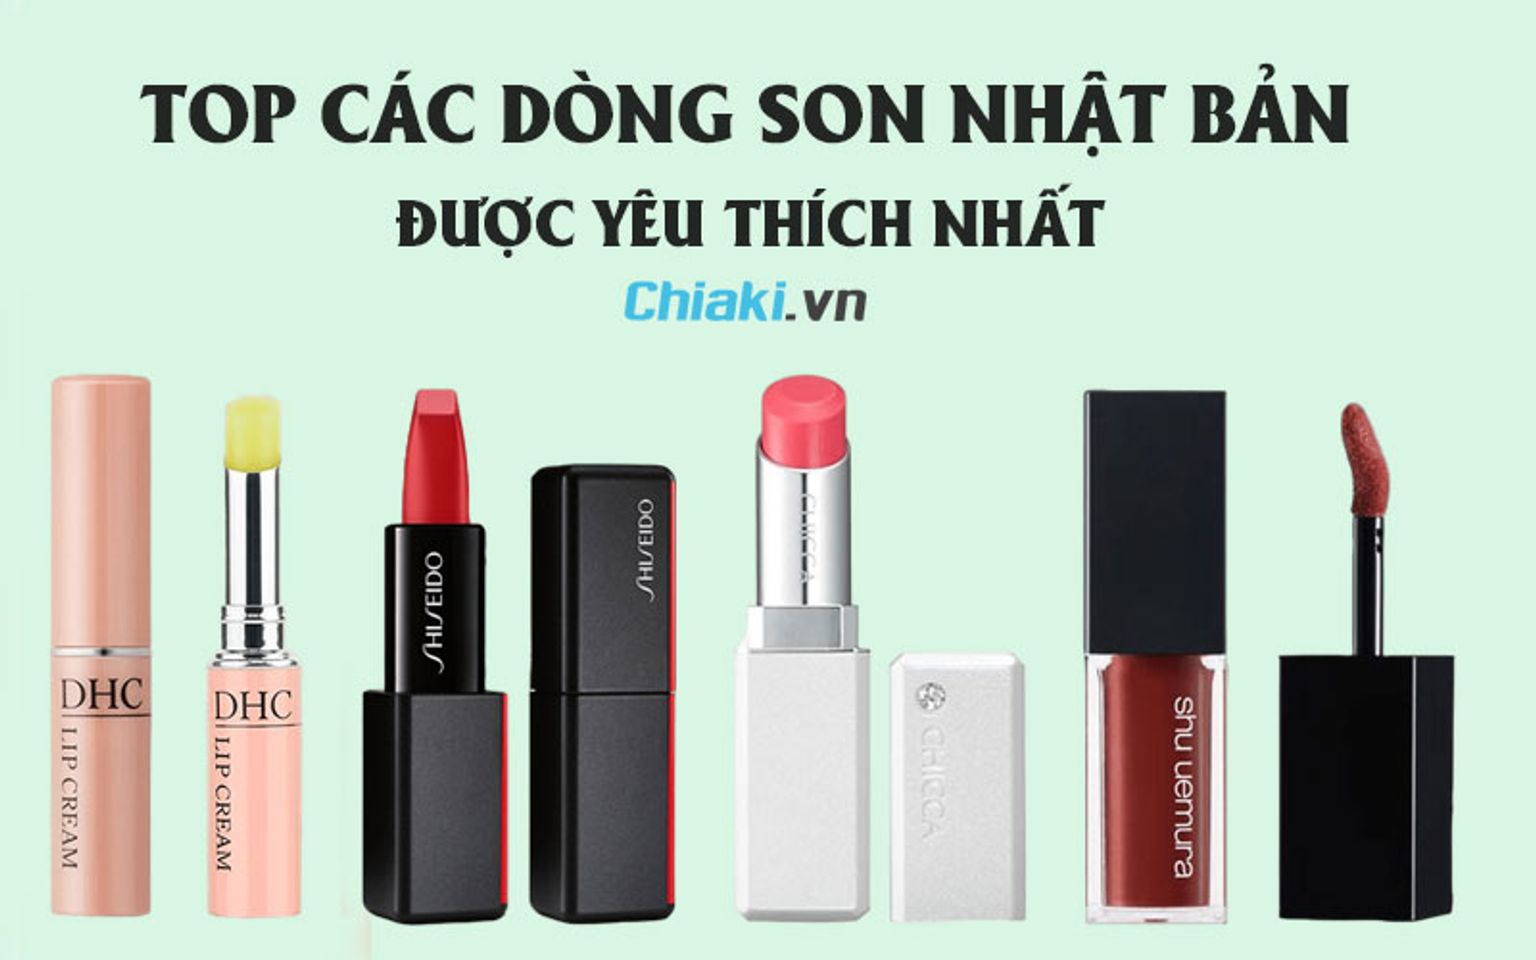 TOP 5 địa chỉ mua son môi ở Hà Nội uy tín với giá tốt nhất